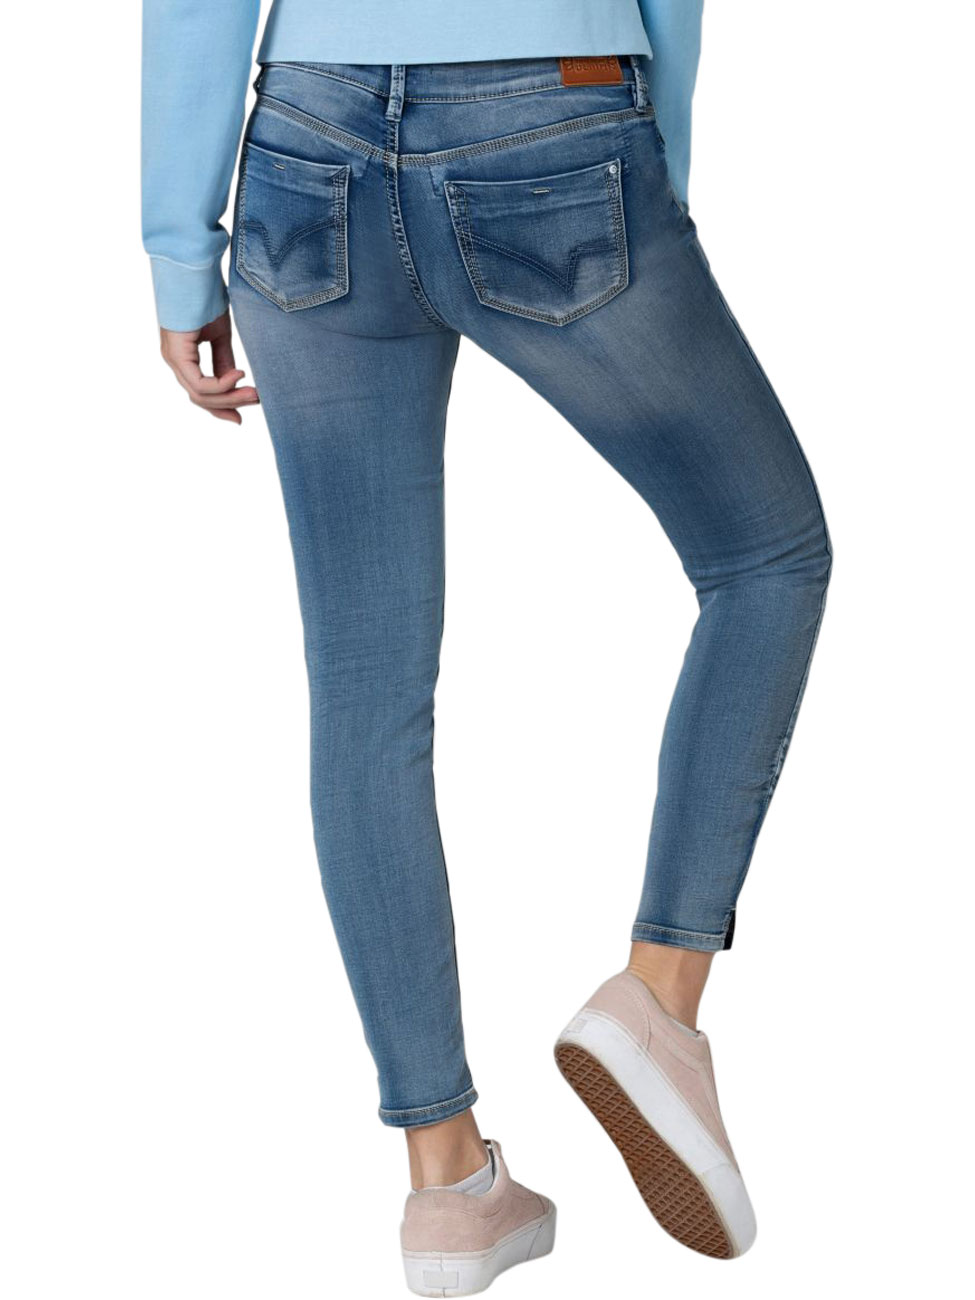 TIMEZONE Damen Jeans Tight AleenaTZ 7/8 - Blau - Aqua Blue Wash günstig online kaufen